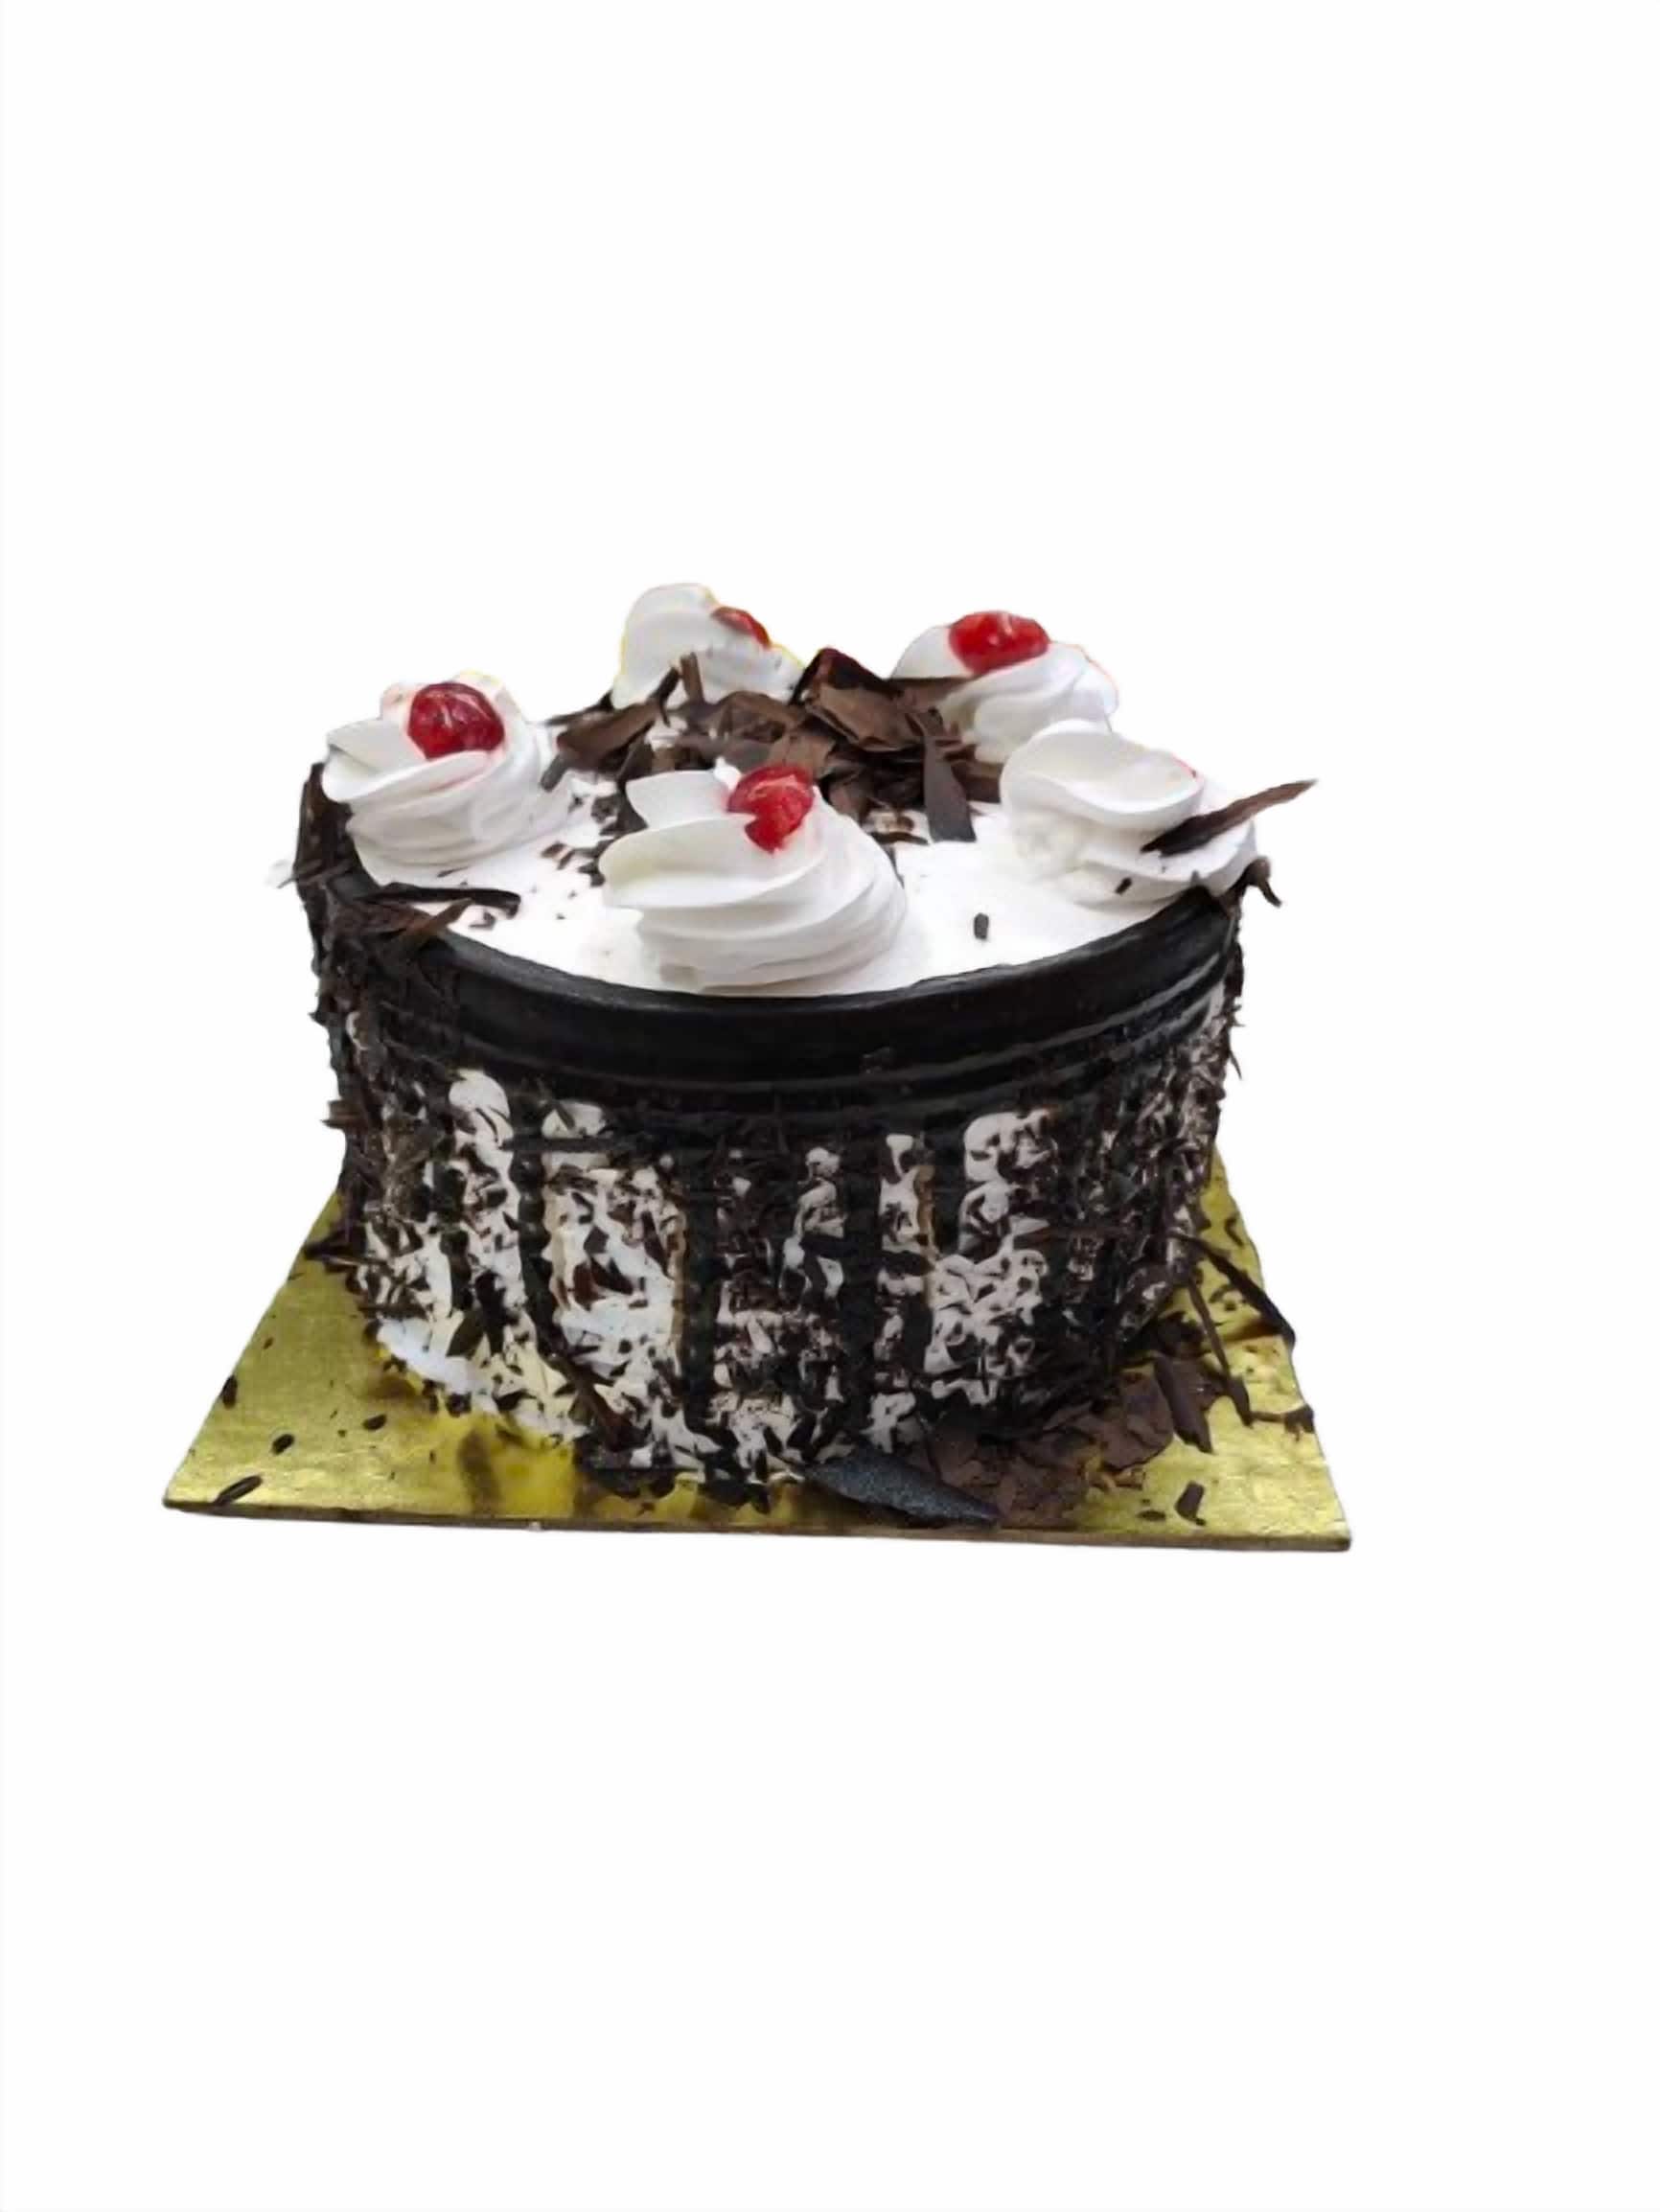 Buy/Send Red Velvet Fresh Cream Cake Half kg Eggless Online- FNP